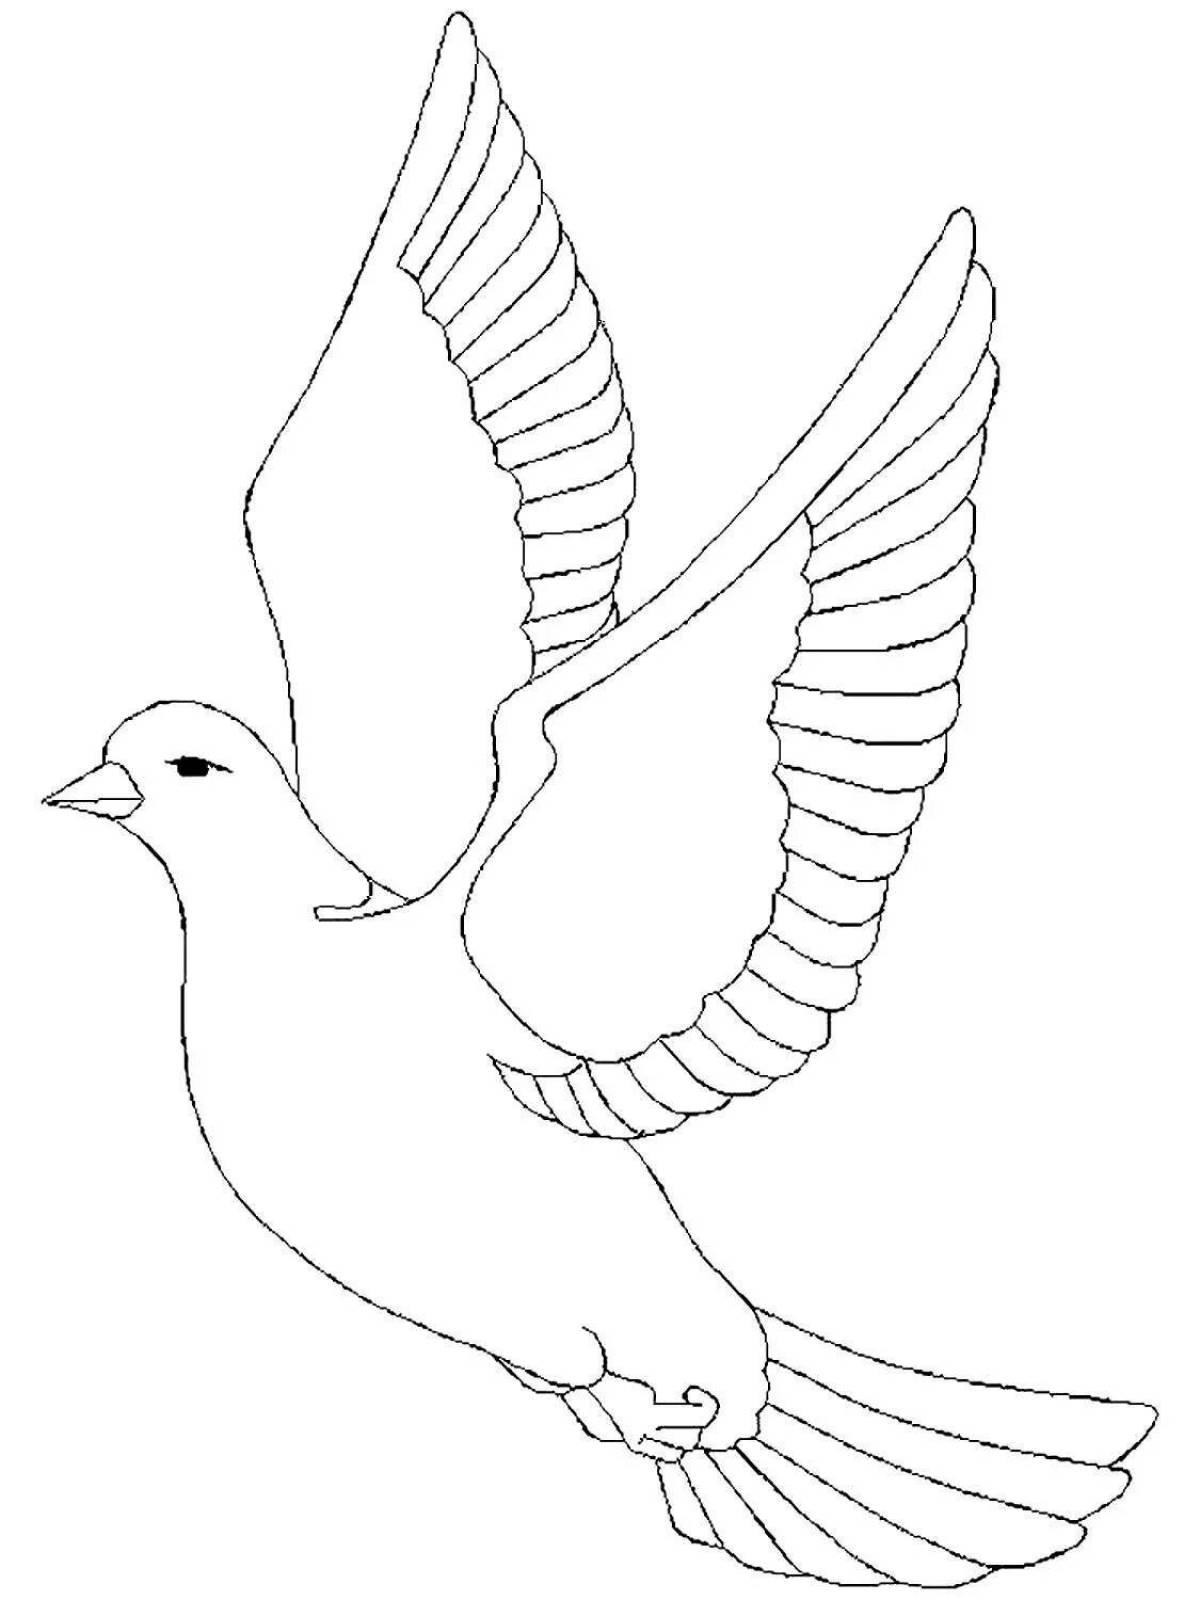 Великолепная раскраска с изображением голубя